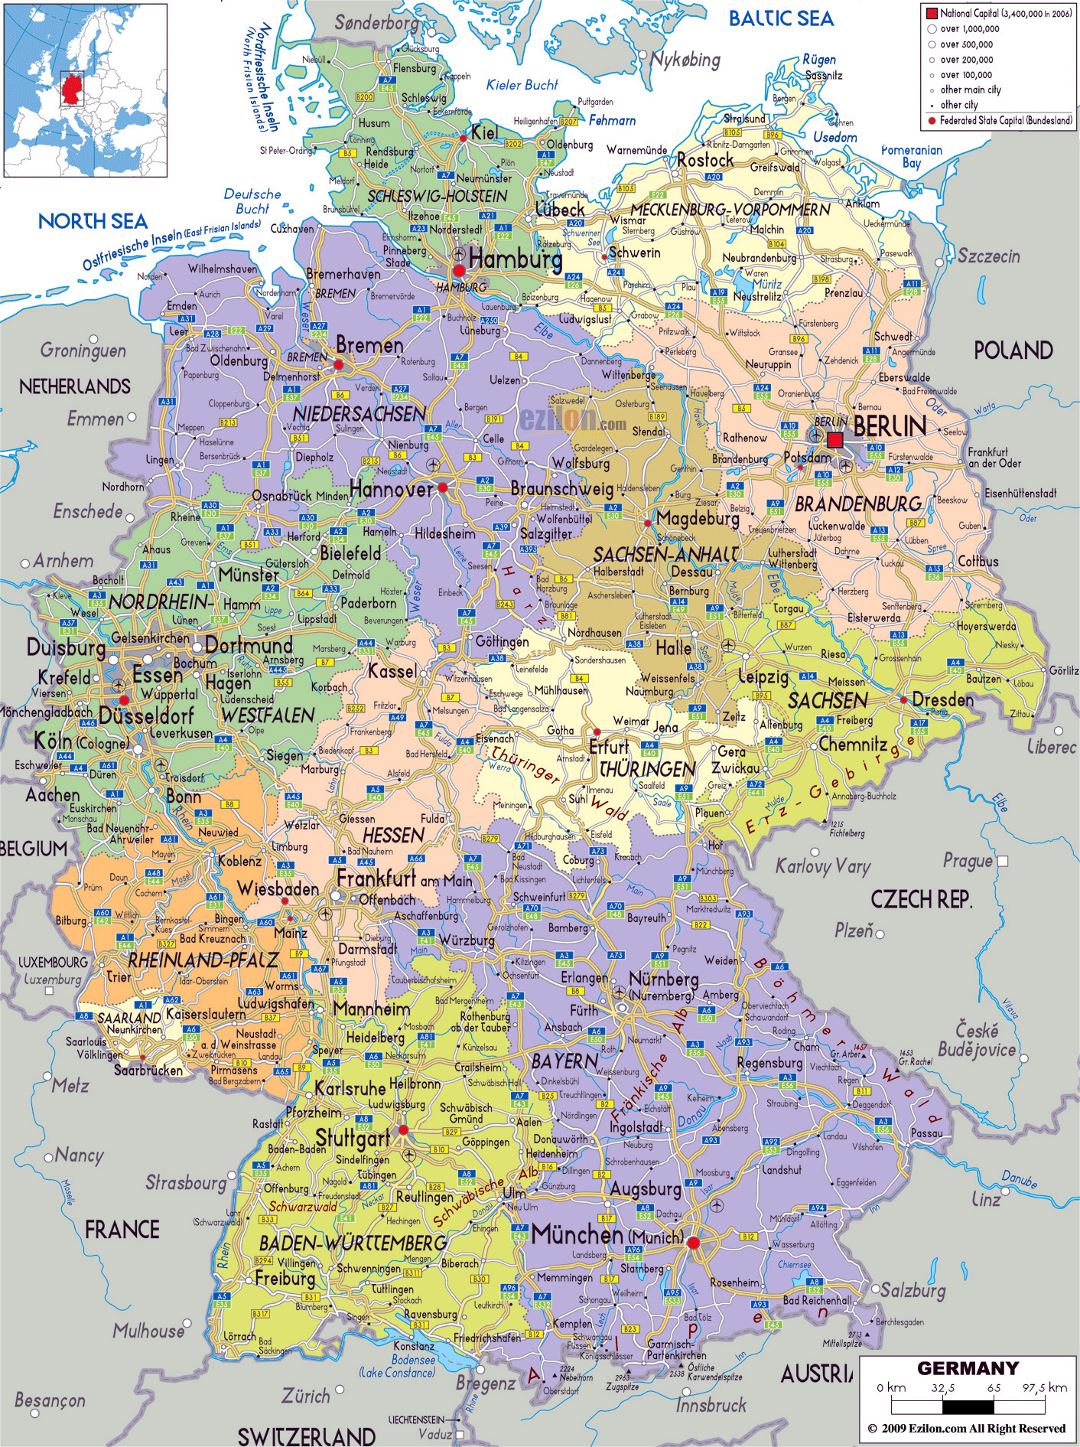 Mapa político y administrativo grande de Alemania, con carreteras, ciudades y aeropuertos